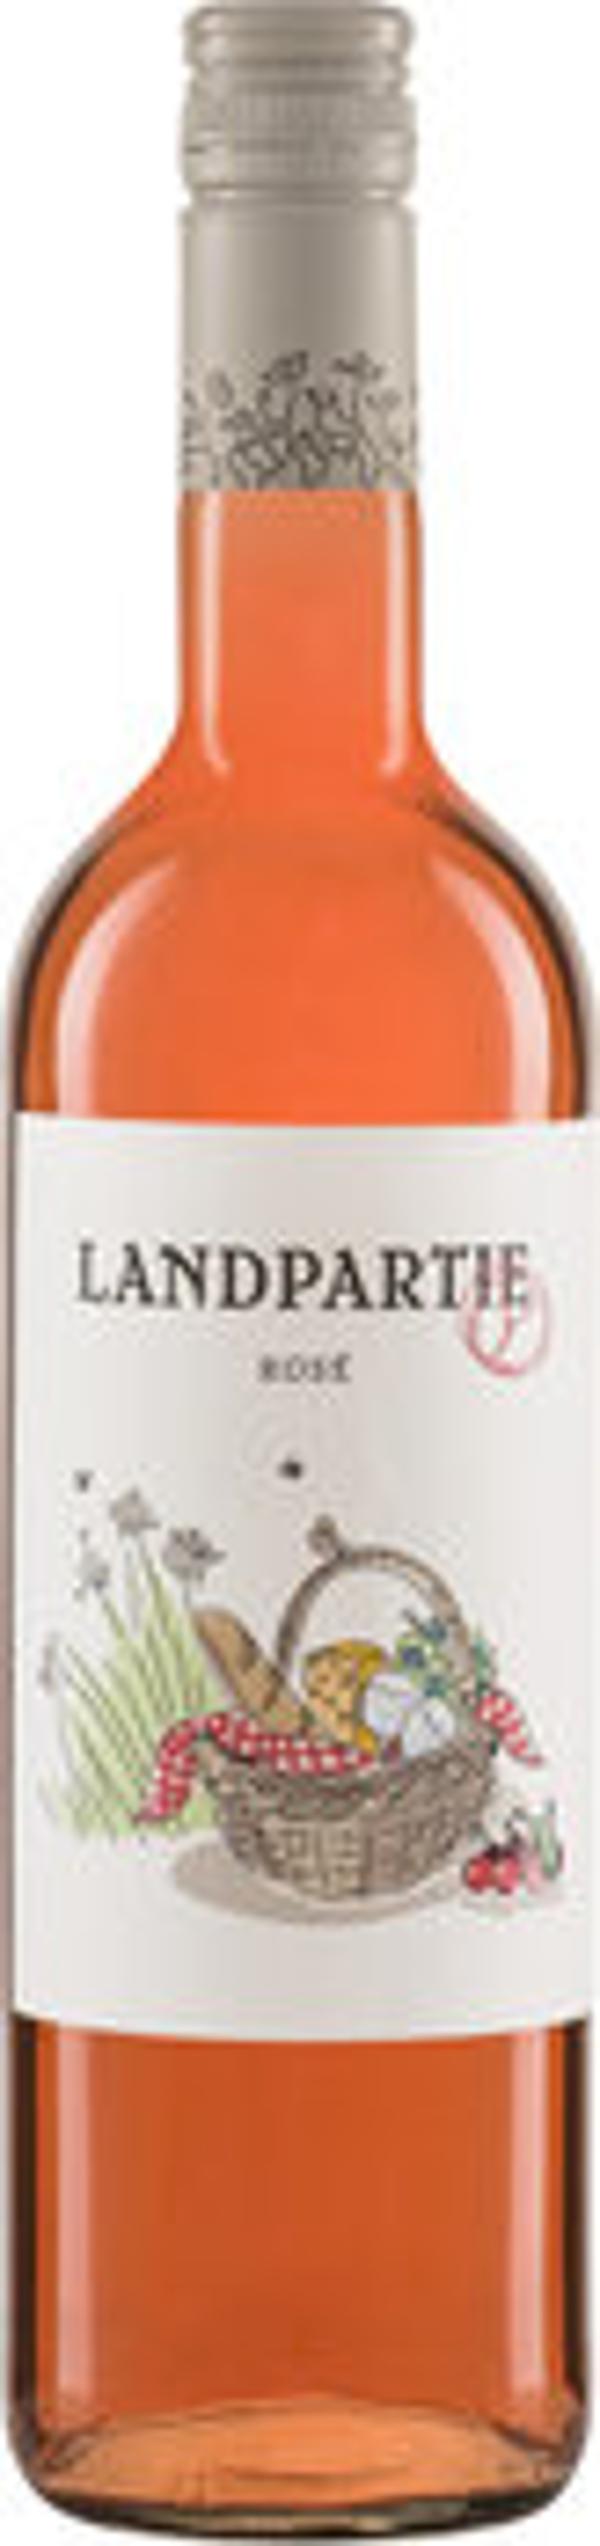 Produktfoto zu Landpartie Rosewein Deutscher Landwein 11%vol.